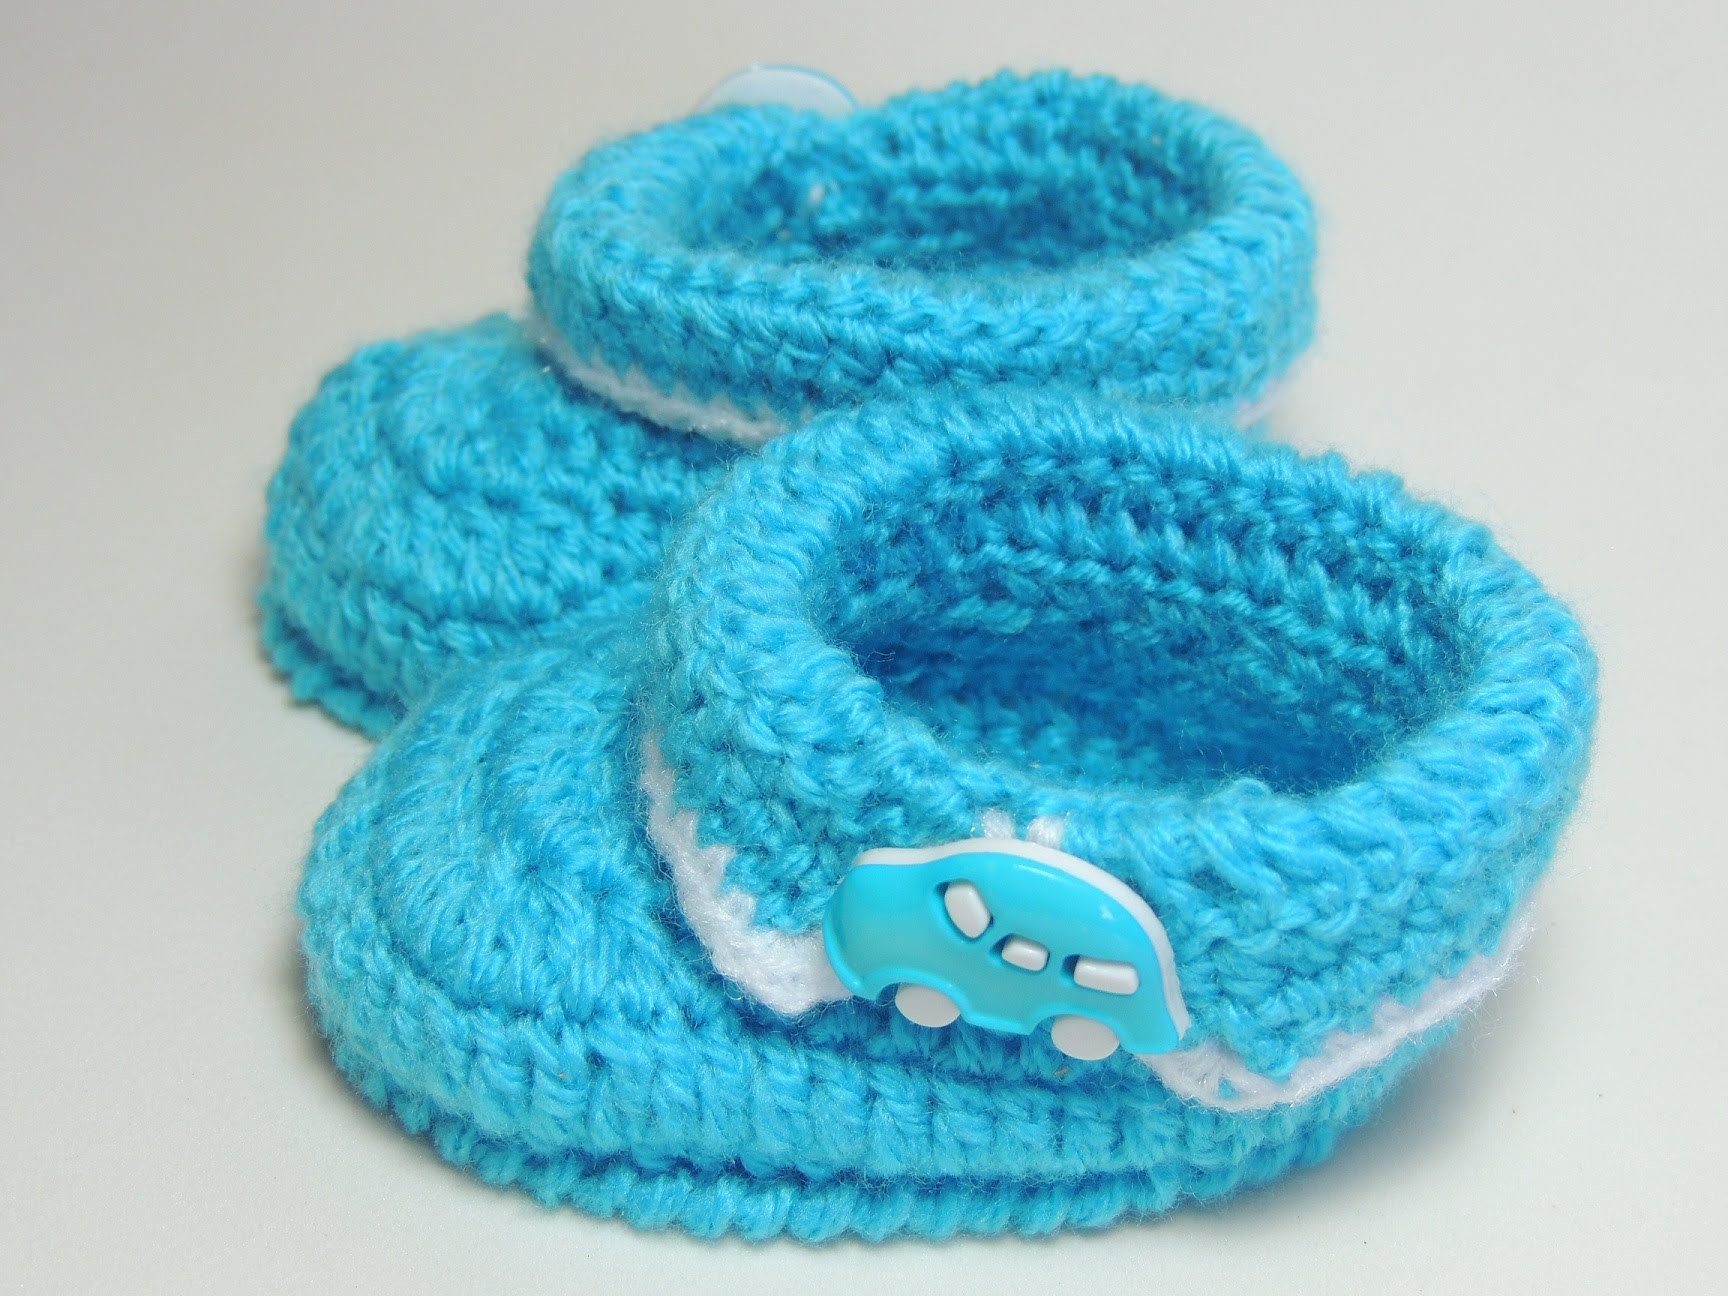 Sapatinho de Crochê Masculino com Lã Azul - Parte 1.3